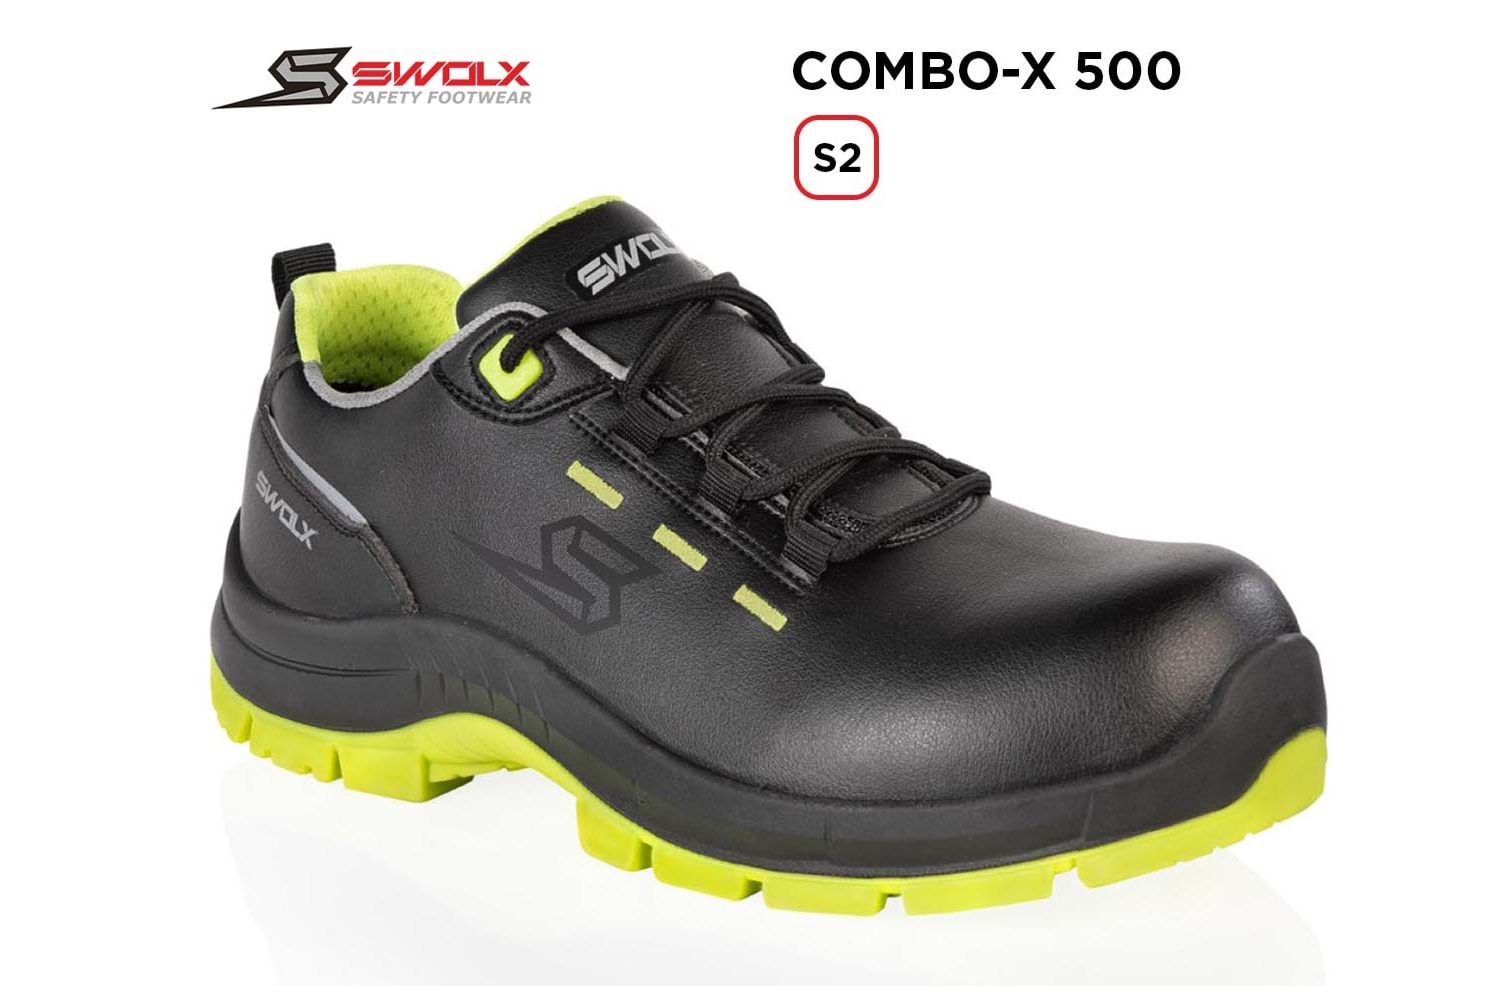 Swolx İş Ayakkabısı - Combo-X 500 S2 - 37